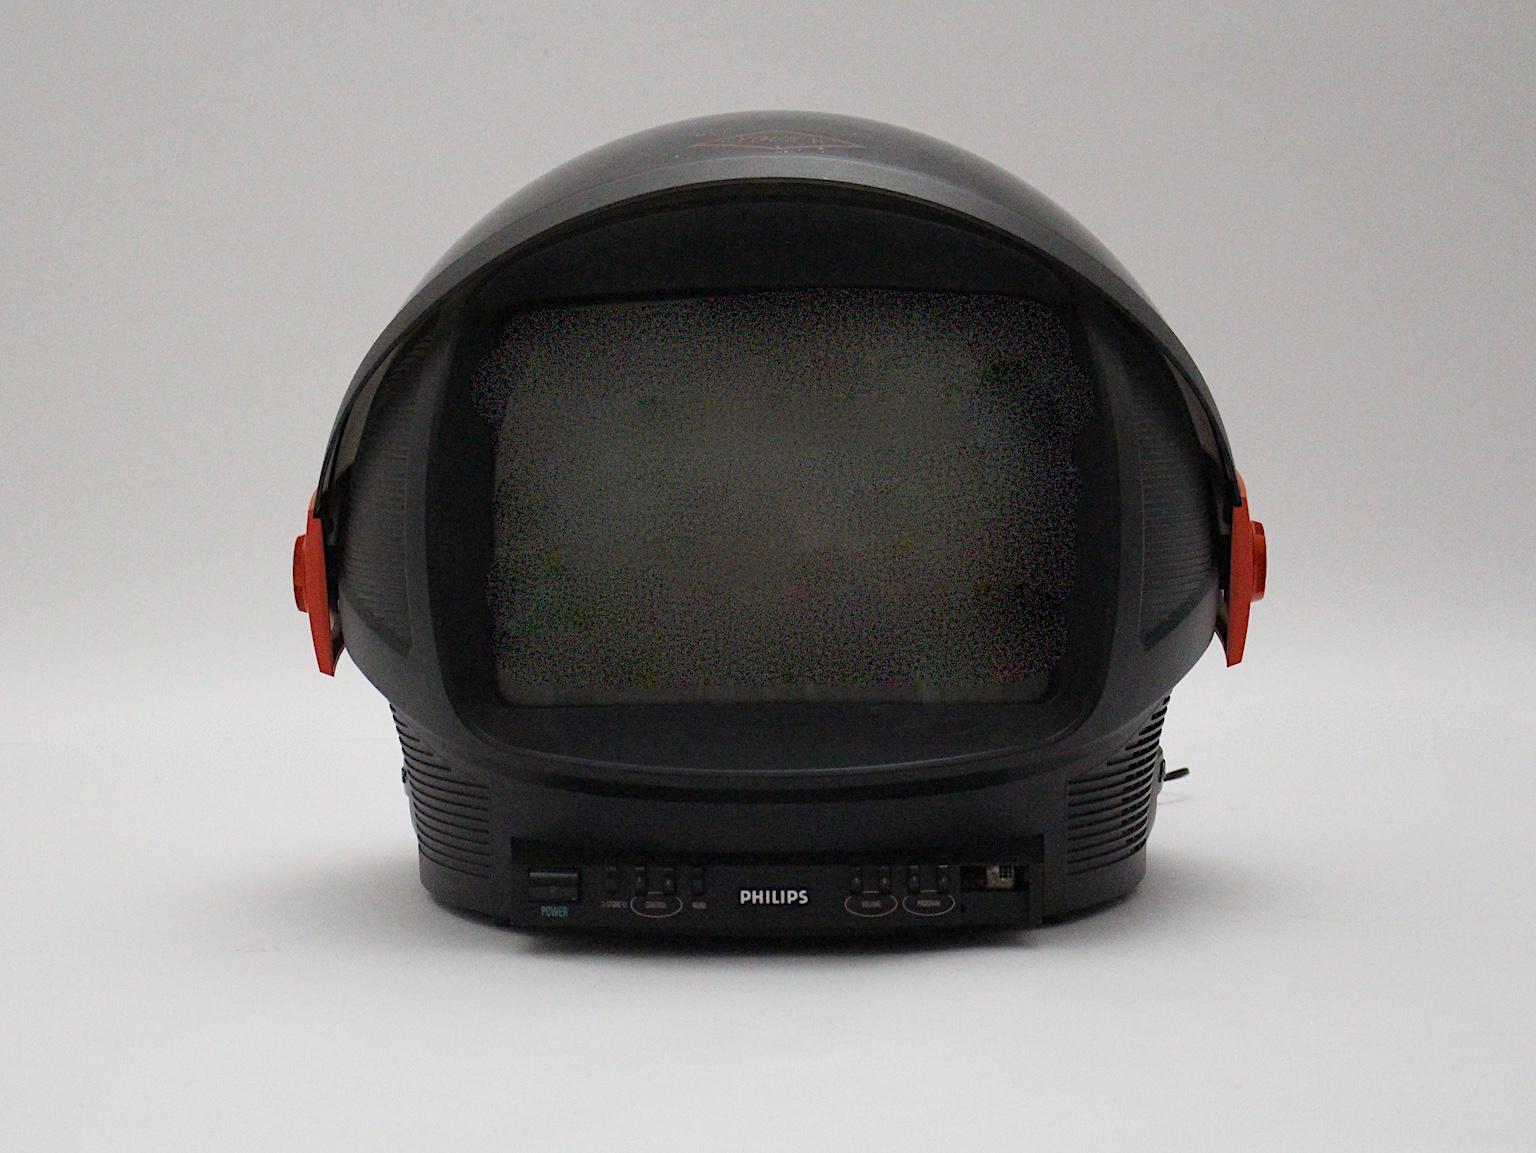  Télévision vintage rouge et plastique de l'ère spatiale nommée discoverer, qui a été fabriquée par Philips, Pays-Bas, années 1980.
Sa forme exceptionnelle rend cette pièce de design si fascinante.
Le boîtier du téléviseur est pliable et ressemble à